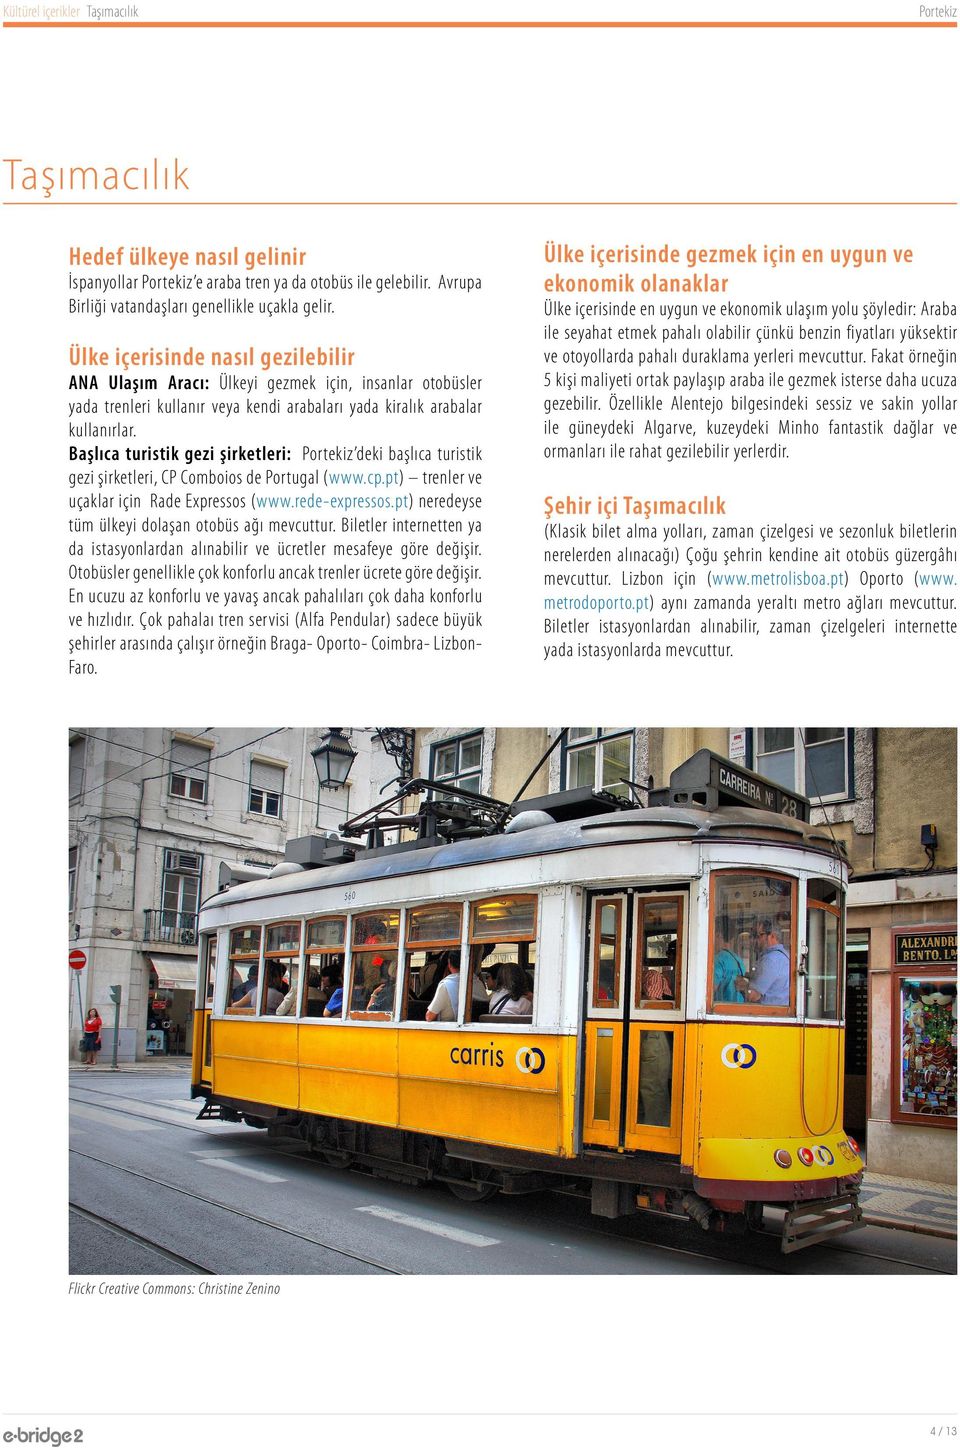 Başlıca turistik gezi şirketleri: deki başlıca turistik gezi şirketleri, CP Comboios de Portugal (www.cp.pt) trenler ve uçaklar için Rade Expressos (www.rede-expressos.